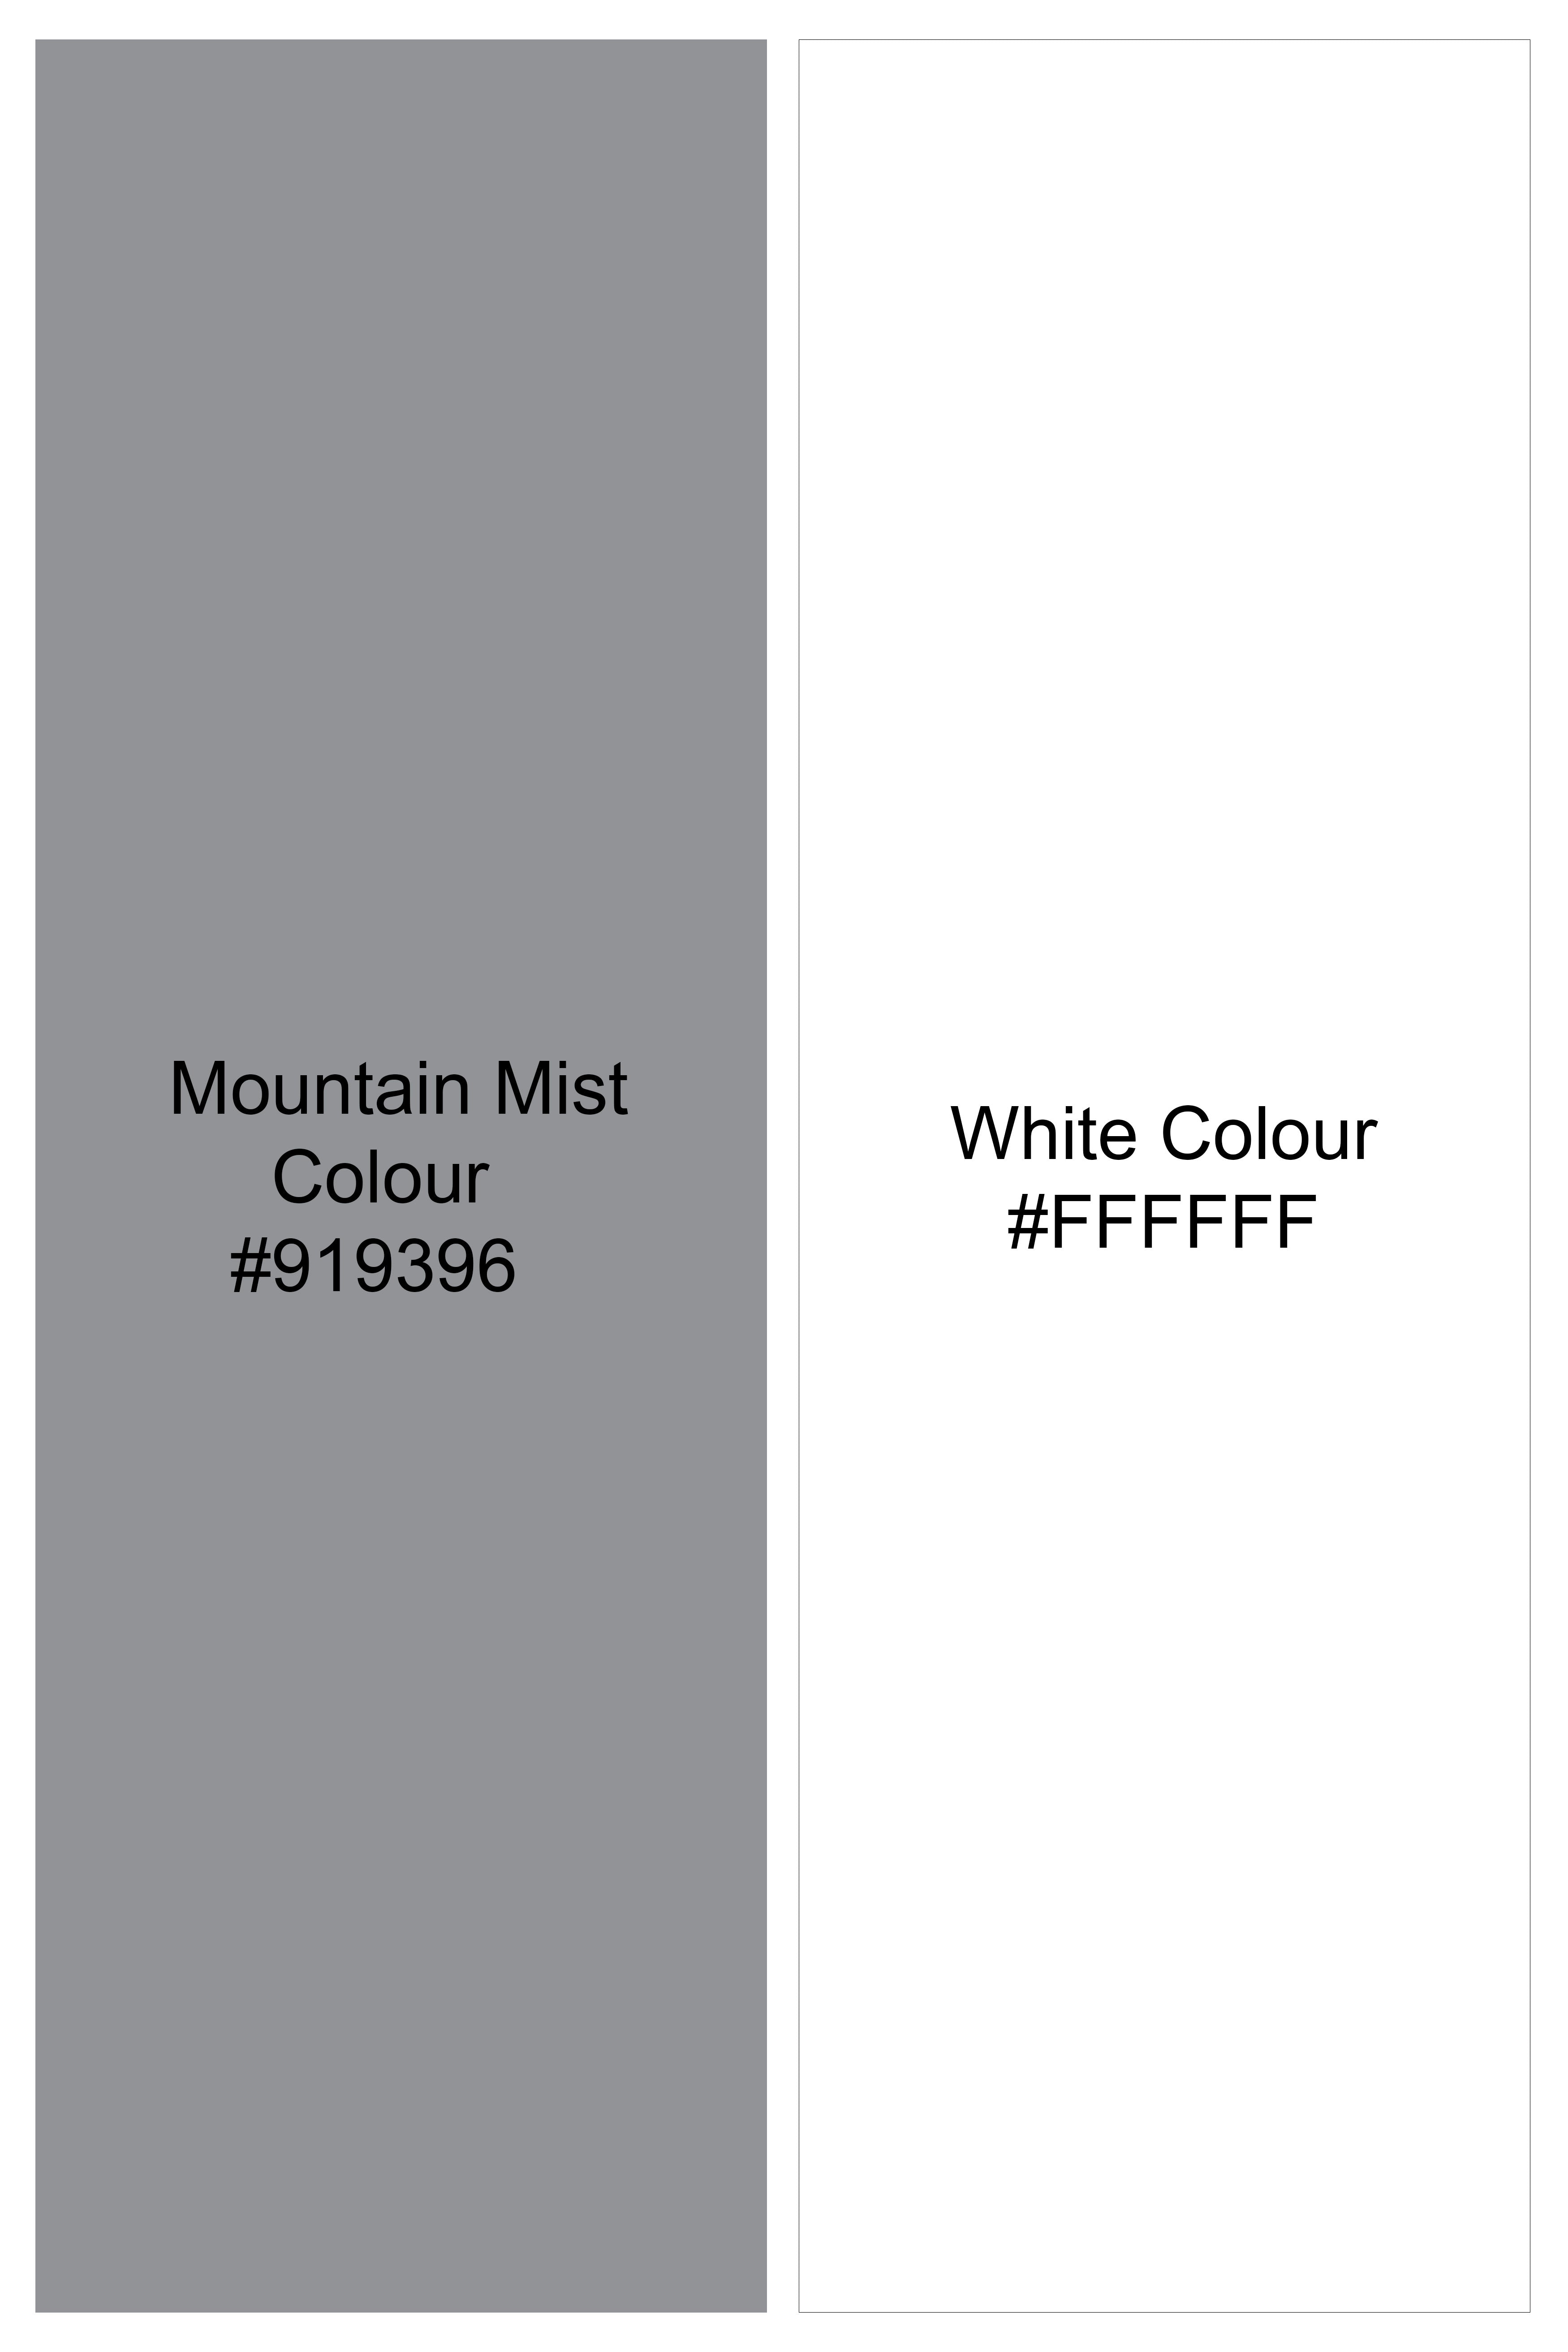 Mountain Mist and White Dobby Textured Premium Giza Cotton Shirt